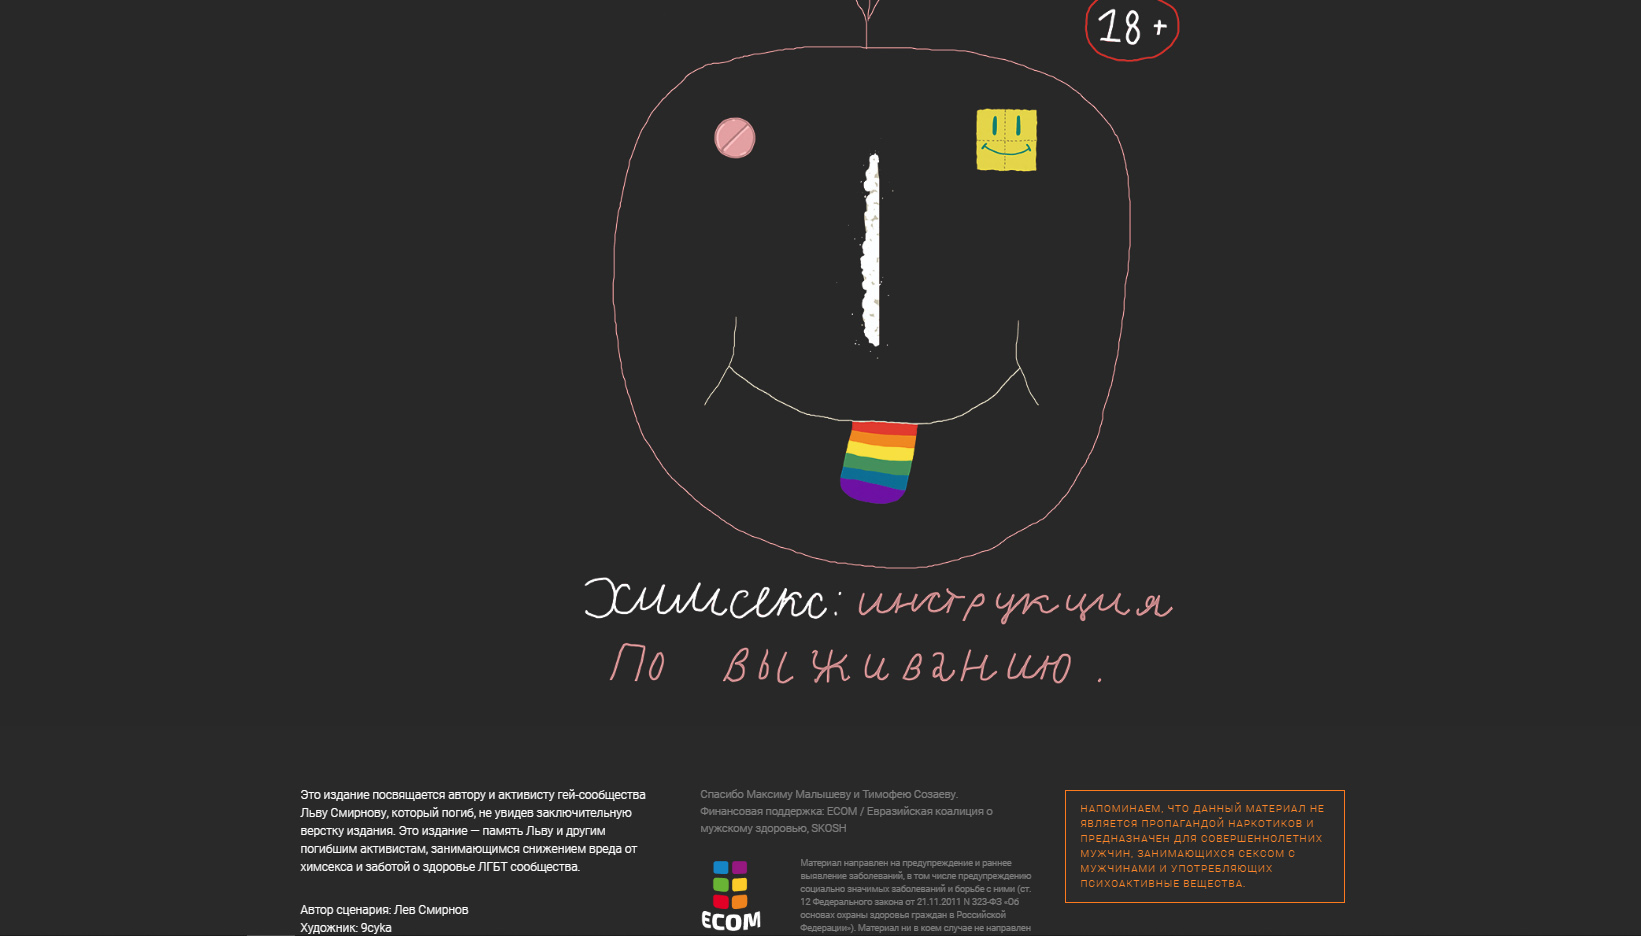 В России заблокирован сайт, посвященный снижению вреда в контексте химсекса